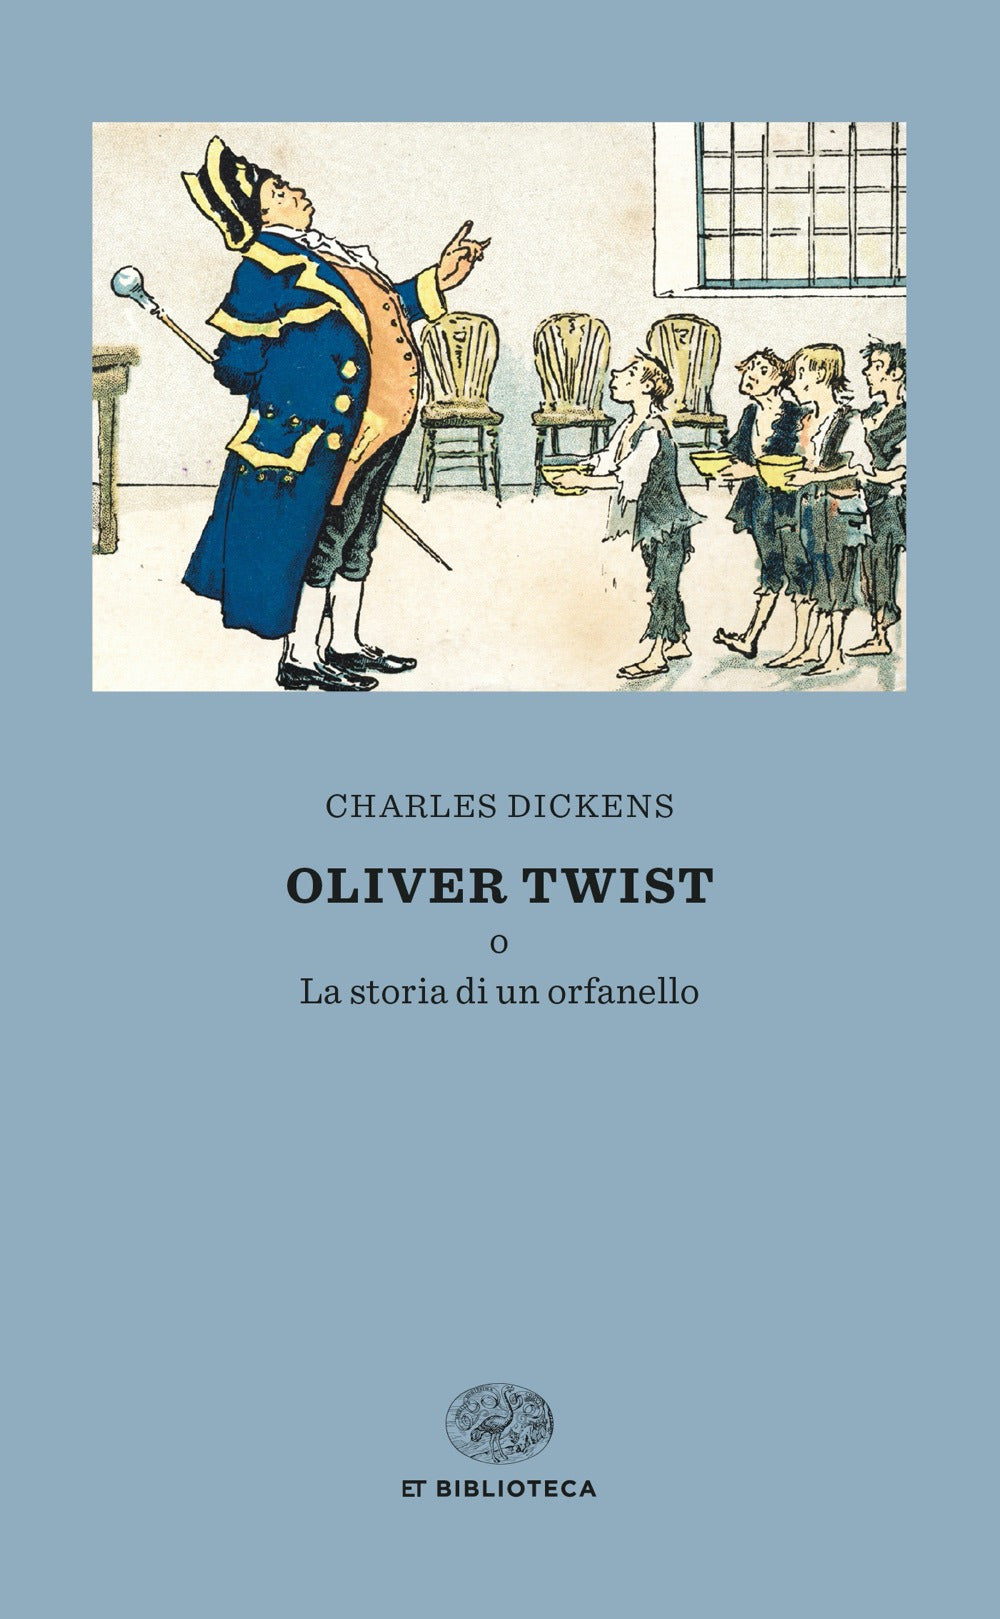 Oliver Twist o la storia di un orfanello.